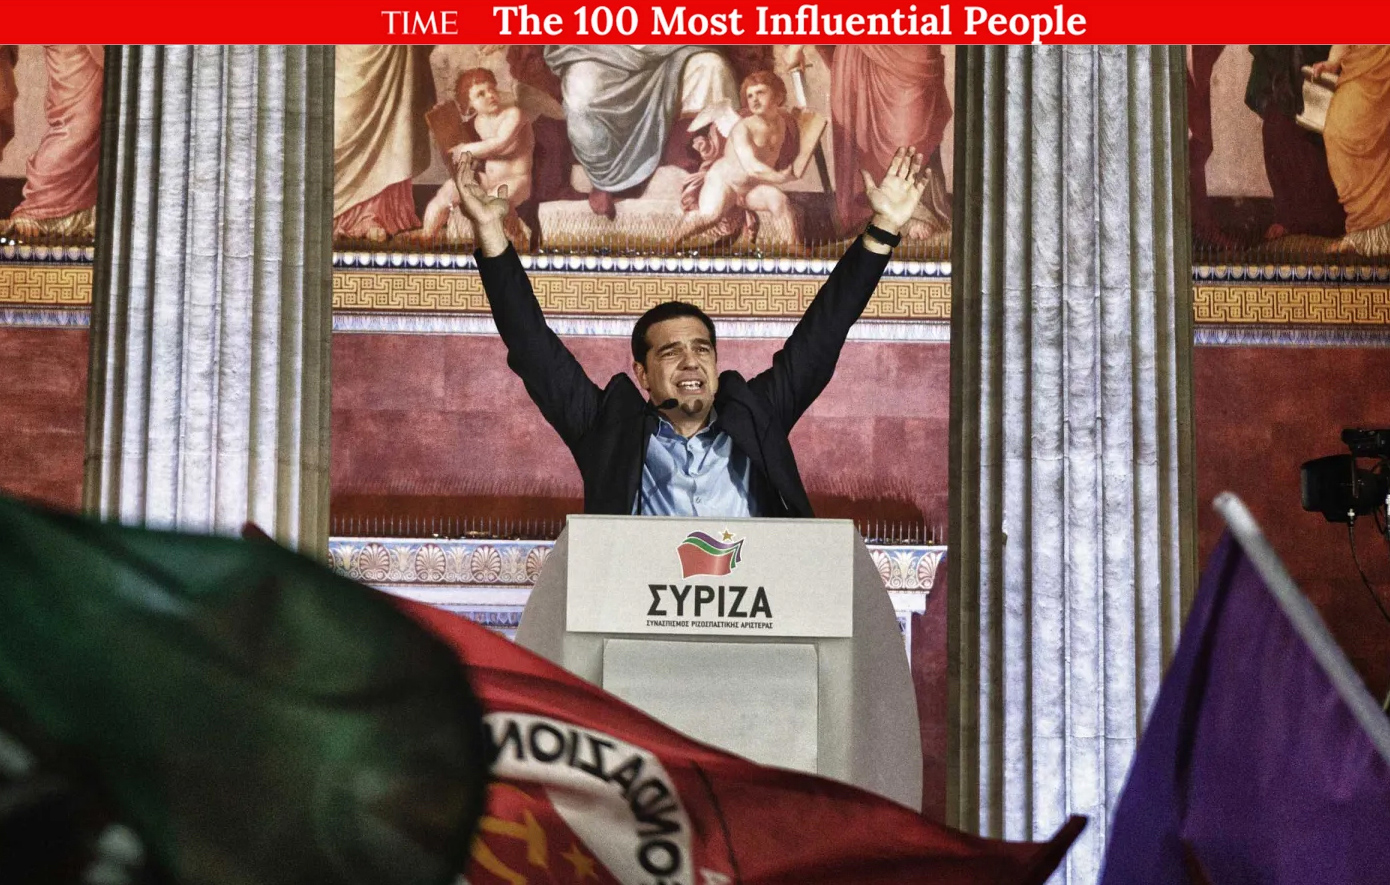 Σαν σήμερα 16 Απριλίου: Ο Αλέξης Τσίπρας φιγουράρει στο περιοδικό TIME με τις 100 προσωπικότητες με τη μεγαλύτερη επιρροή στον κόσμο